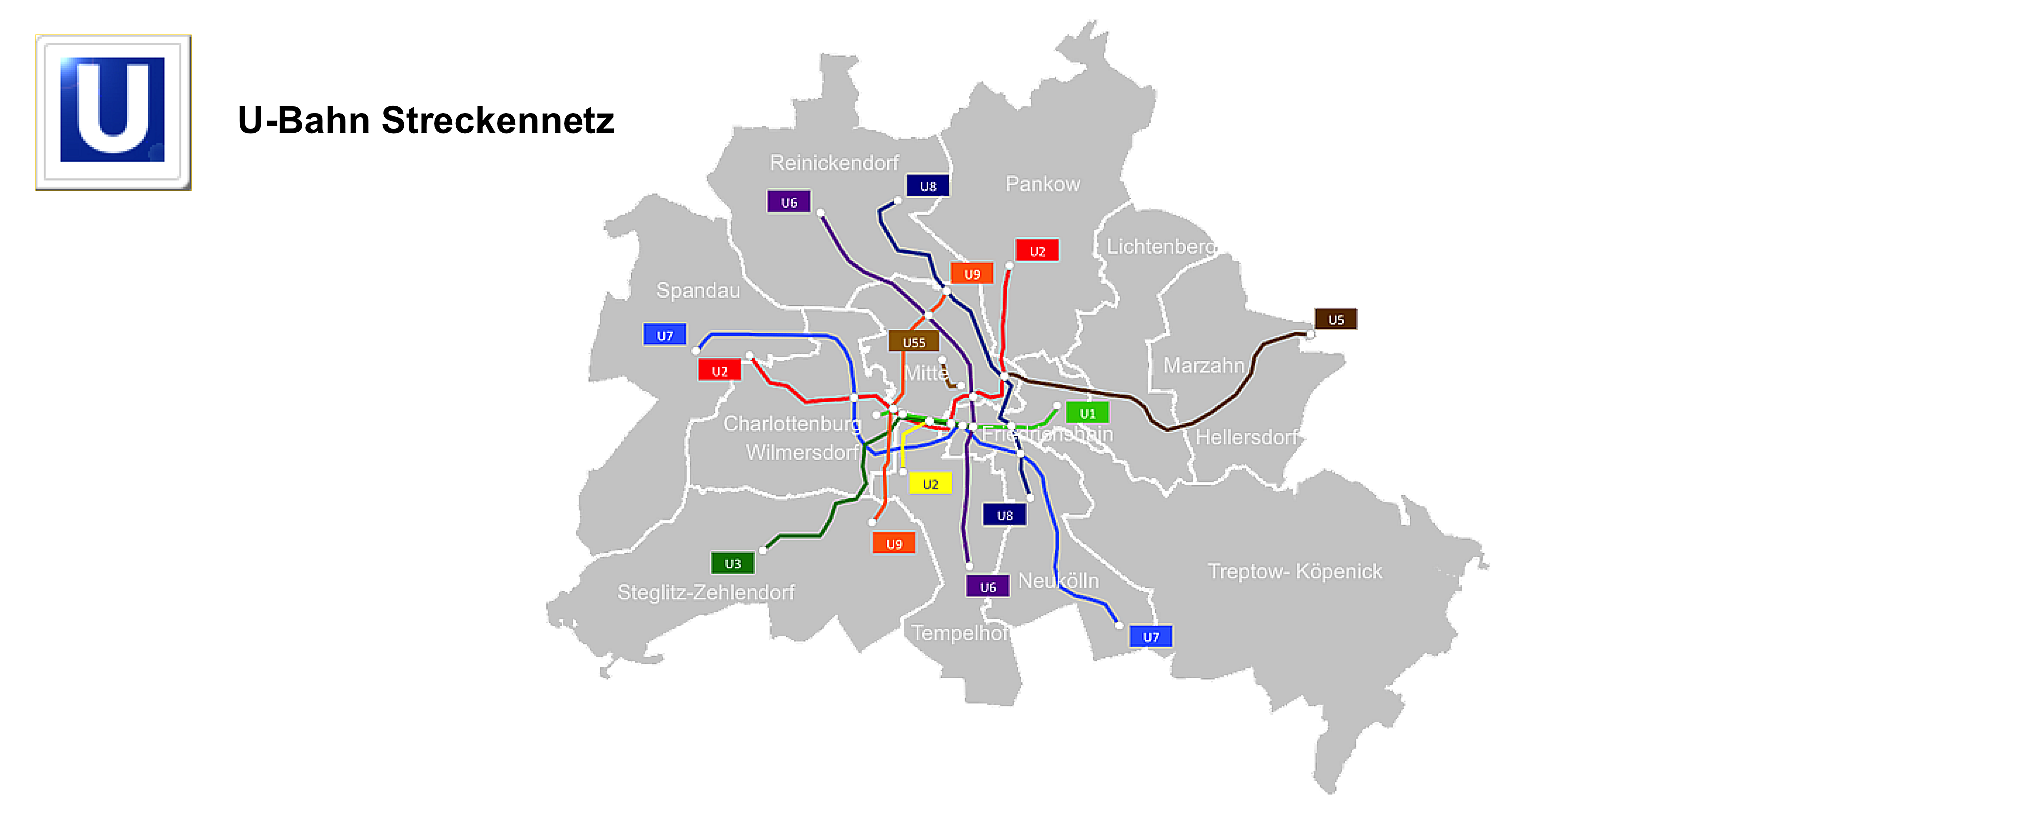 Streckennetz der U-Bahn in Berlin